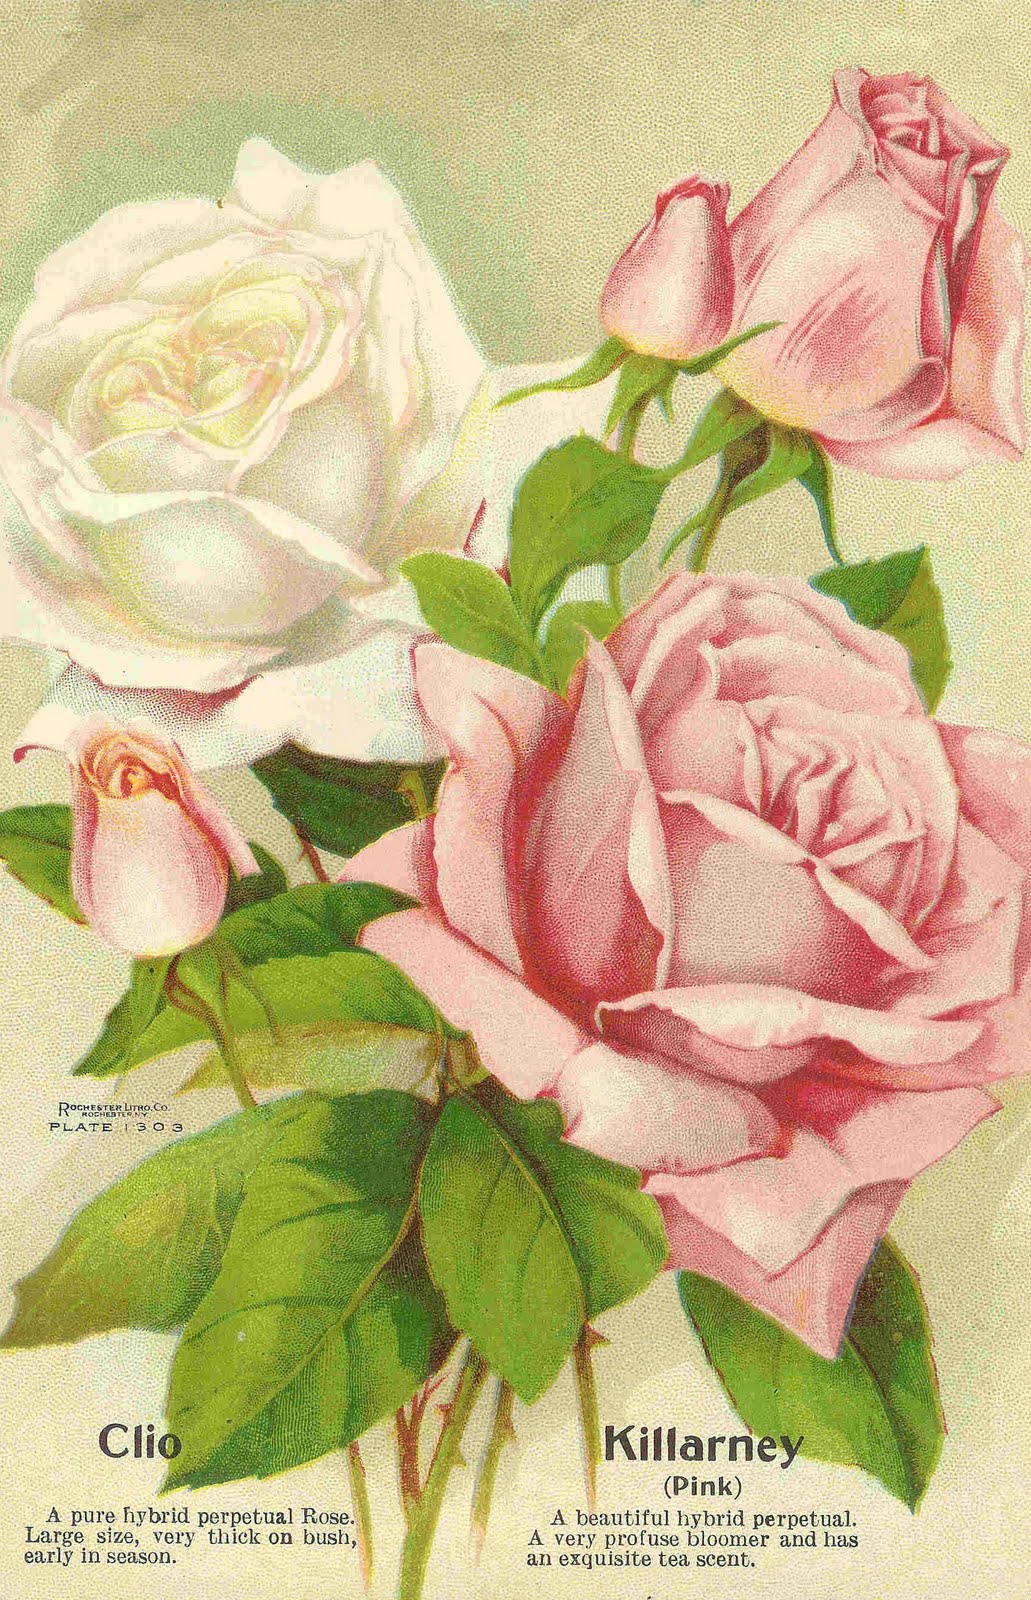 rose garden clip art free - photo #26